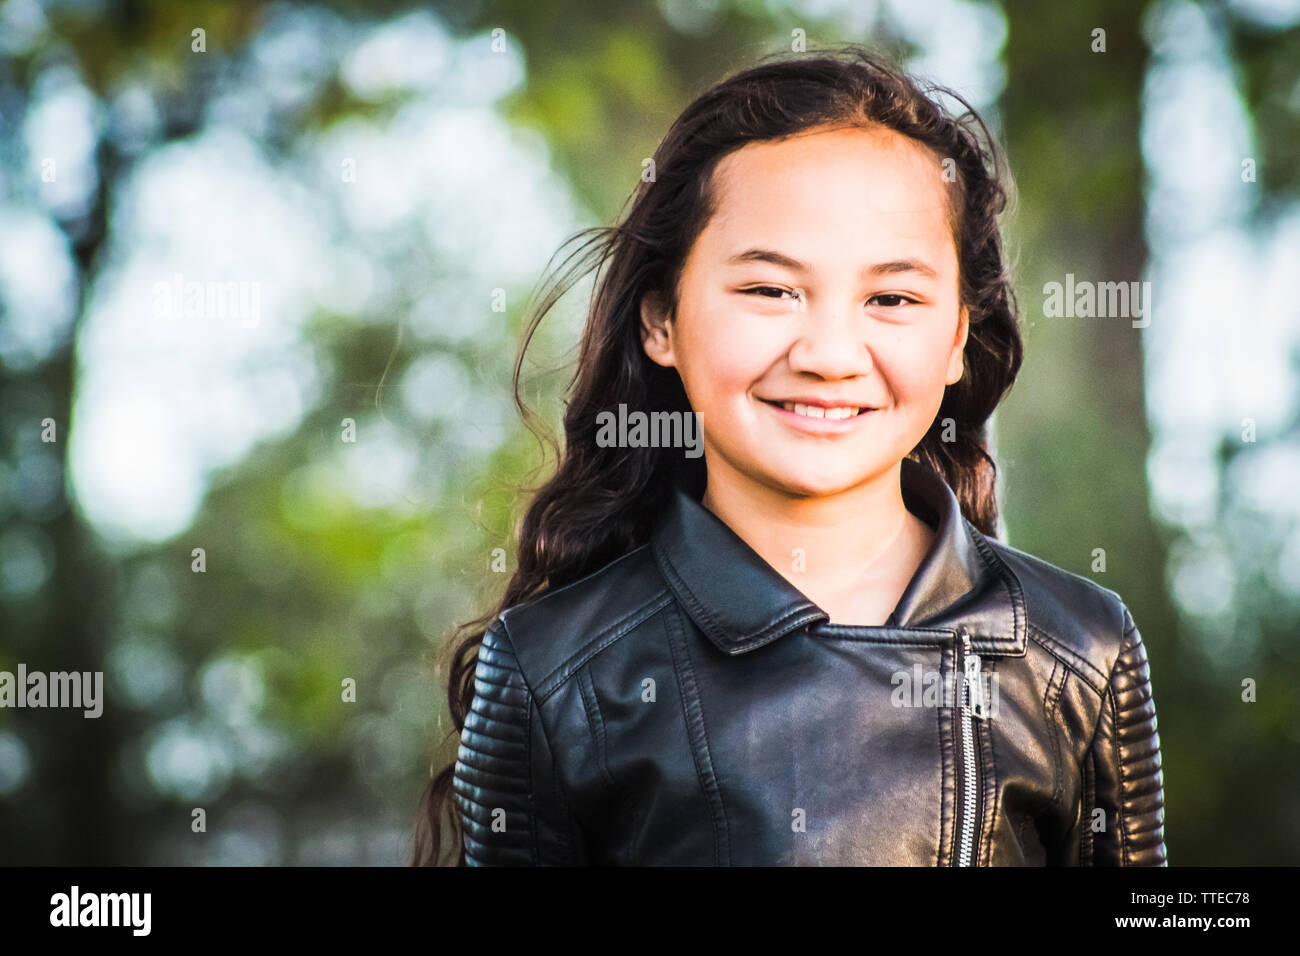 Immagine ritratto di una giovane ragazza Maori presi all'aperto in un parco con spazio di copia Foto Stock